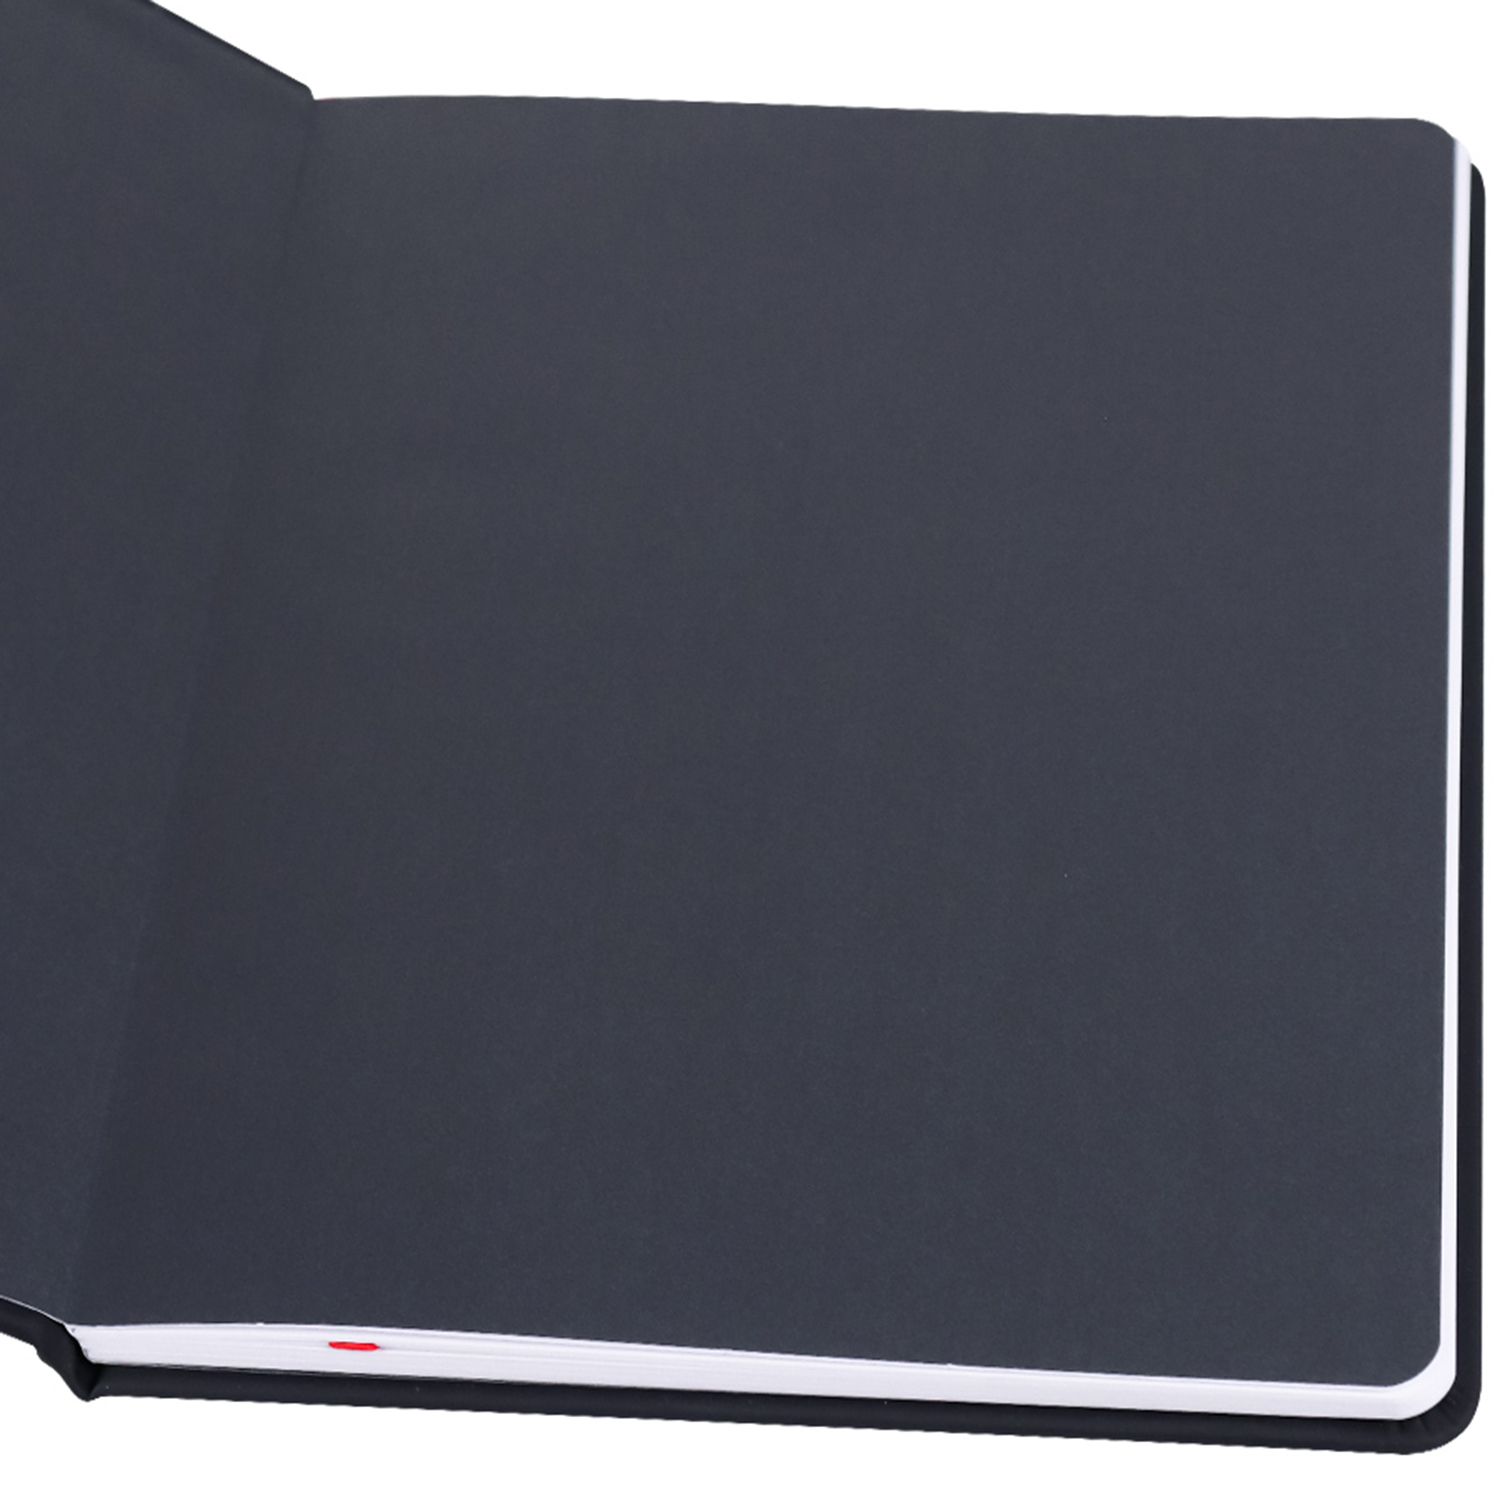 Дневник школьный Prof-Press Silhouette 48 листов кожзам 1-11 класс - фото 3